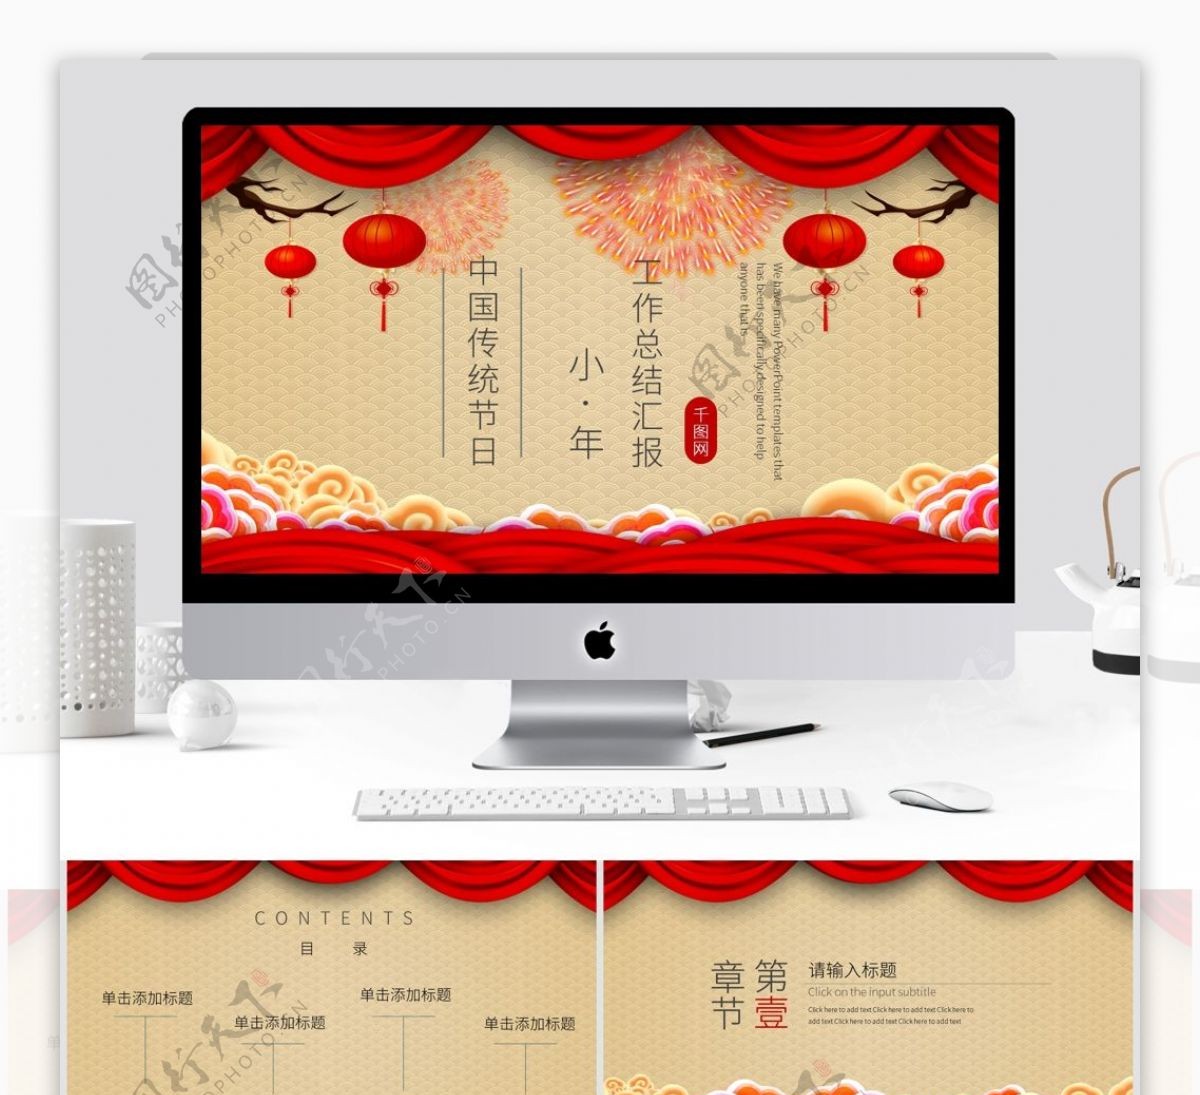 红色喜庆中国传统节日年终总结PPT模板